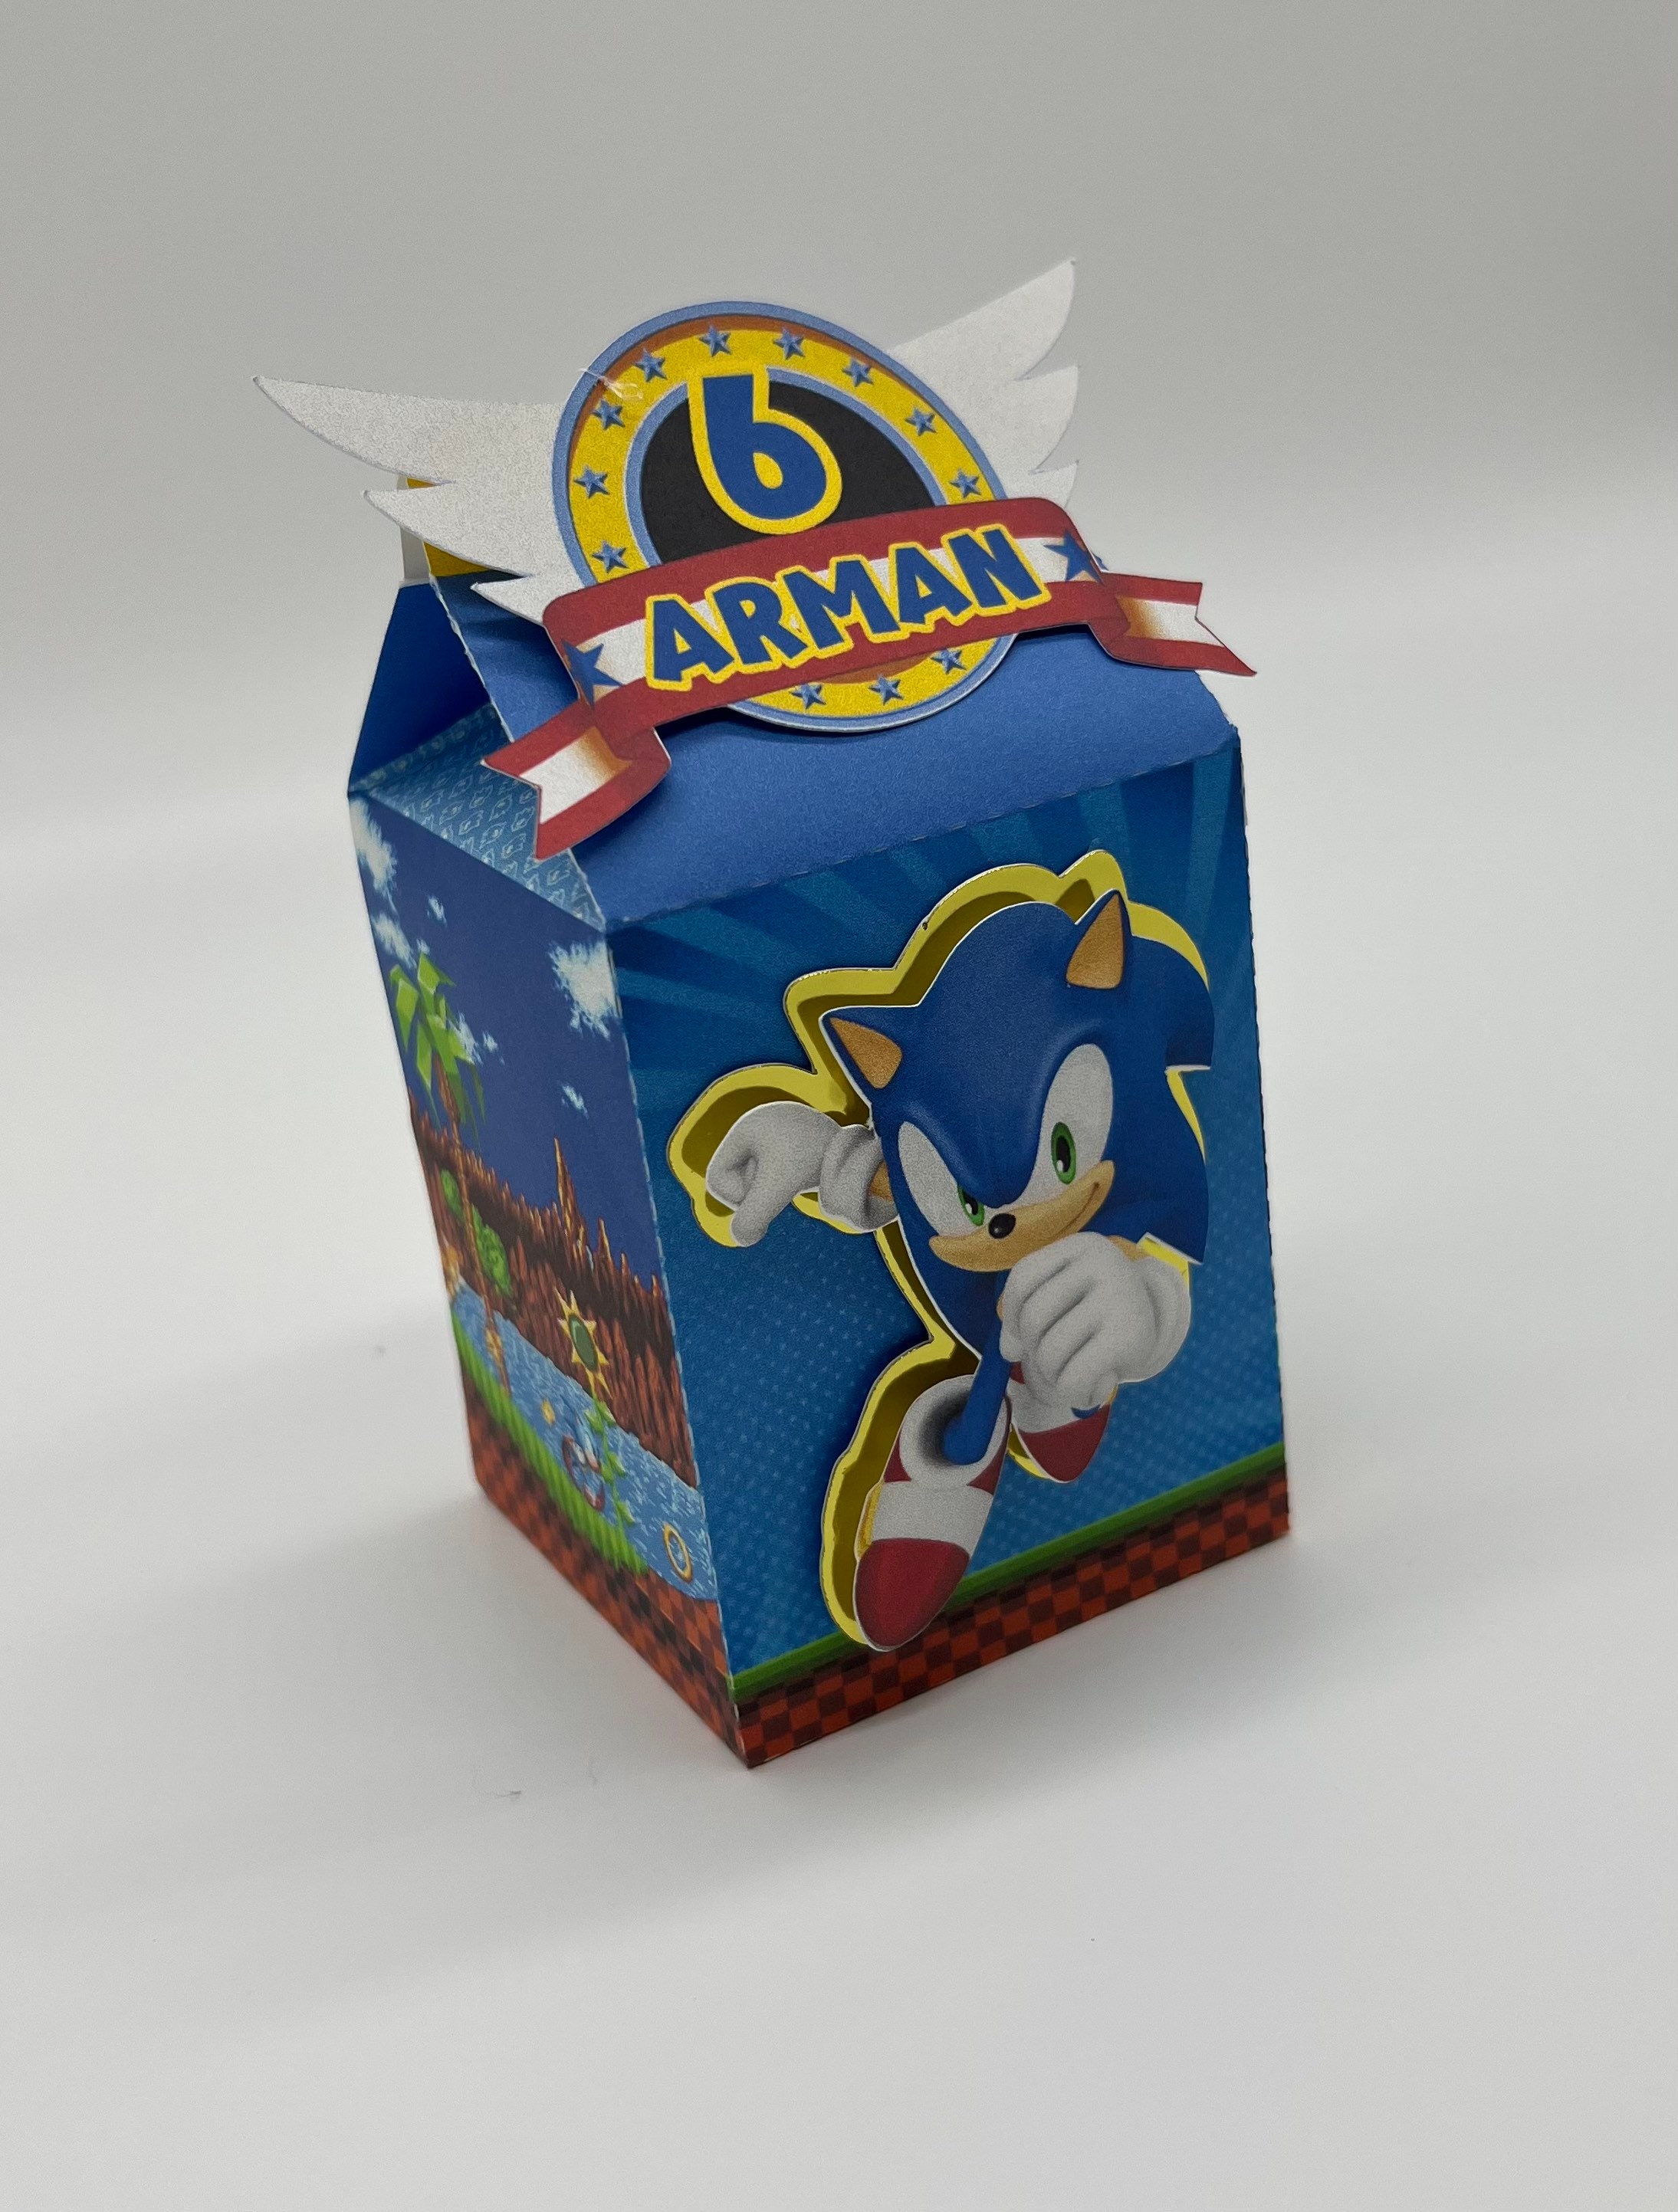 Comprar Set de papelaria Caixa de Pintar Sonic Prime - Brinquedos Para  Crianças